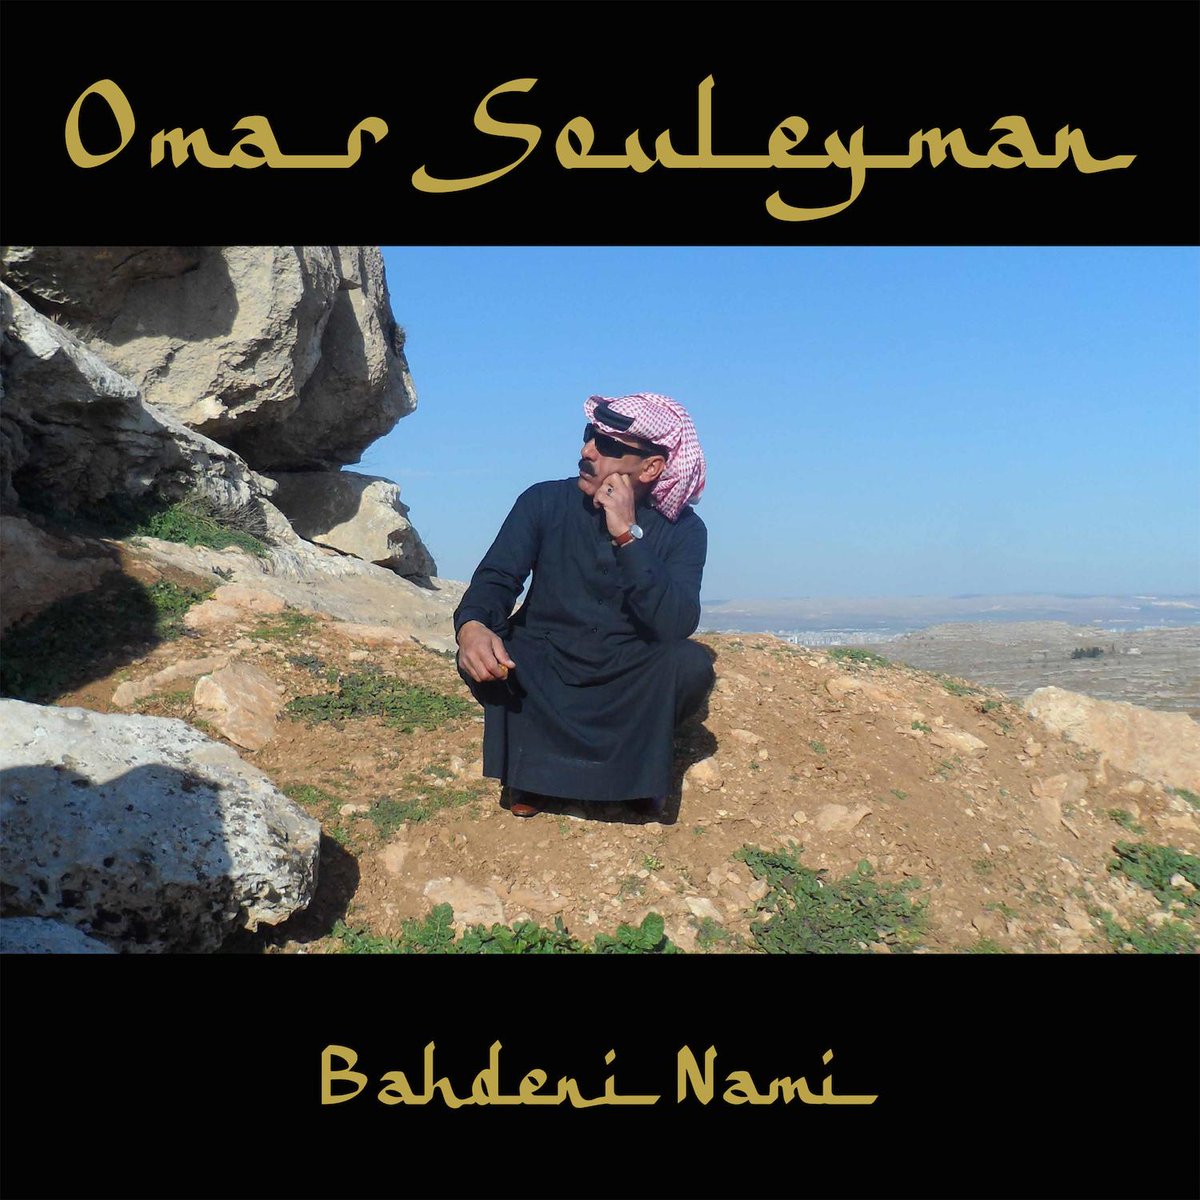 #OmarSouleyman's new album ft. #FourTet, #GillesPeterson, #Modeselektor #Legowelt j.mp/OmarMTR #Vinyl